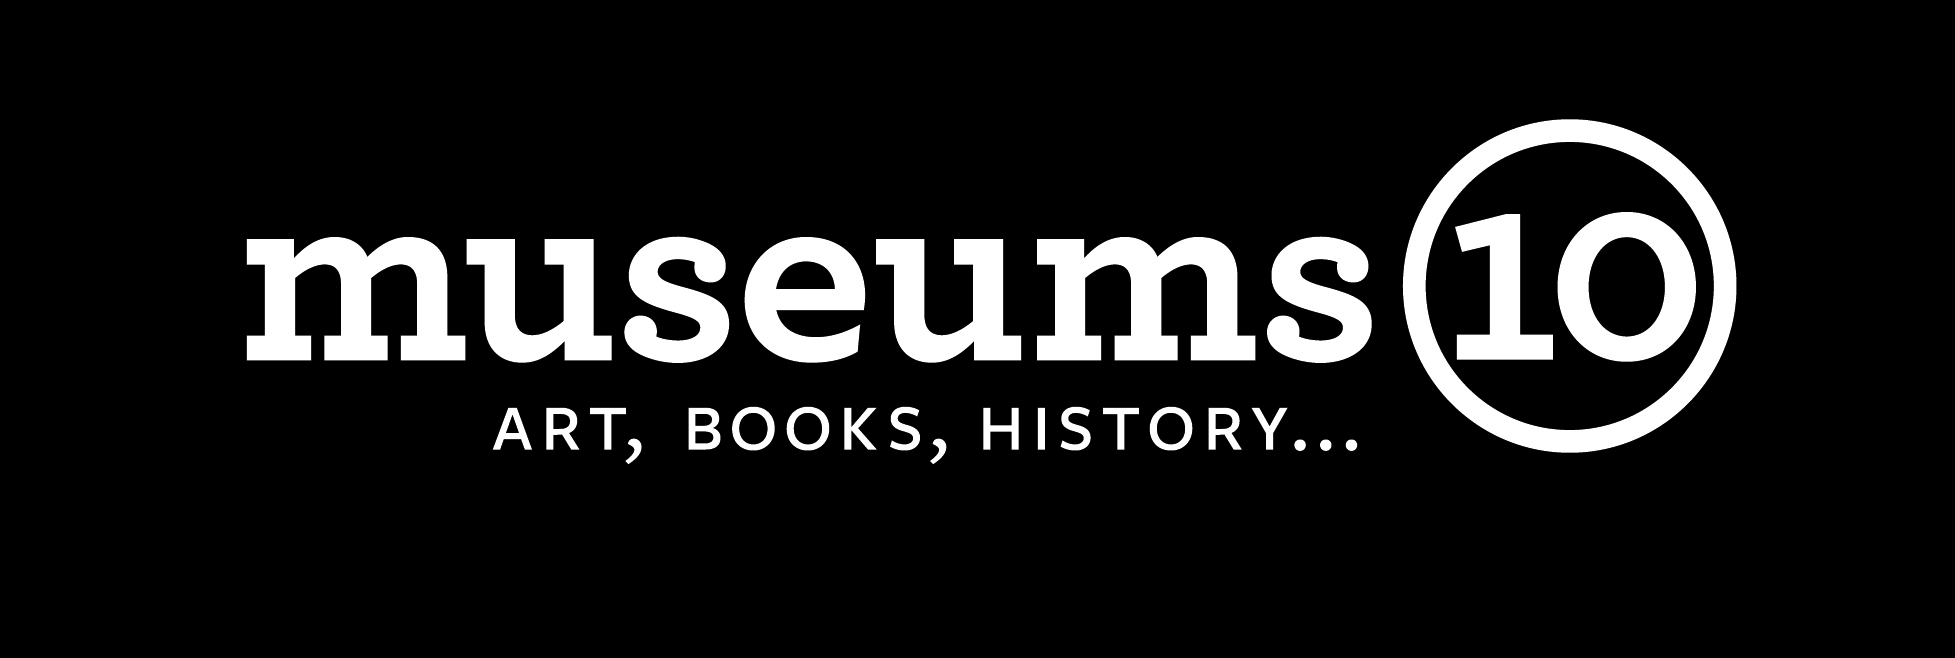 Museums10 logo